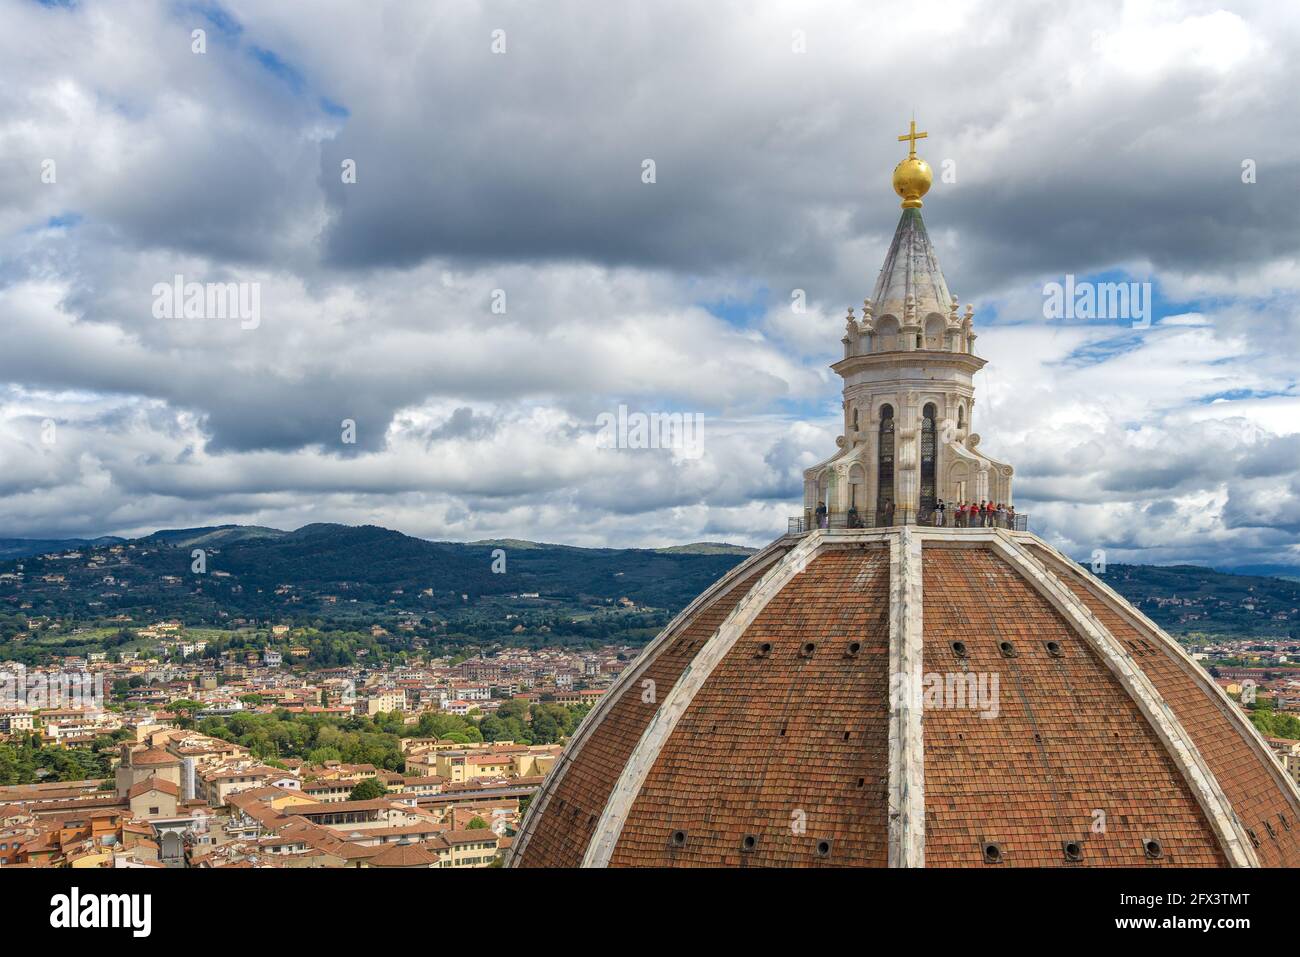 Cupola della Cattedrale di Santa Maria del Fiore da vicino sullo sfondo del paesaggio urbano in un giorno nuvoloso di settembre. Firenze, Italia Foto Stock